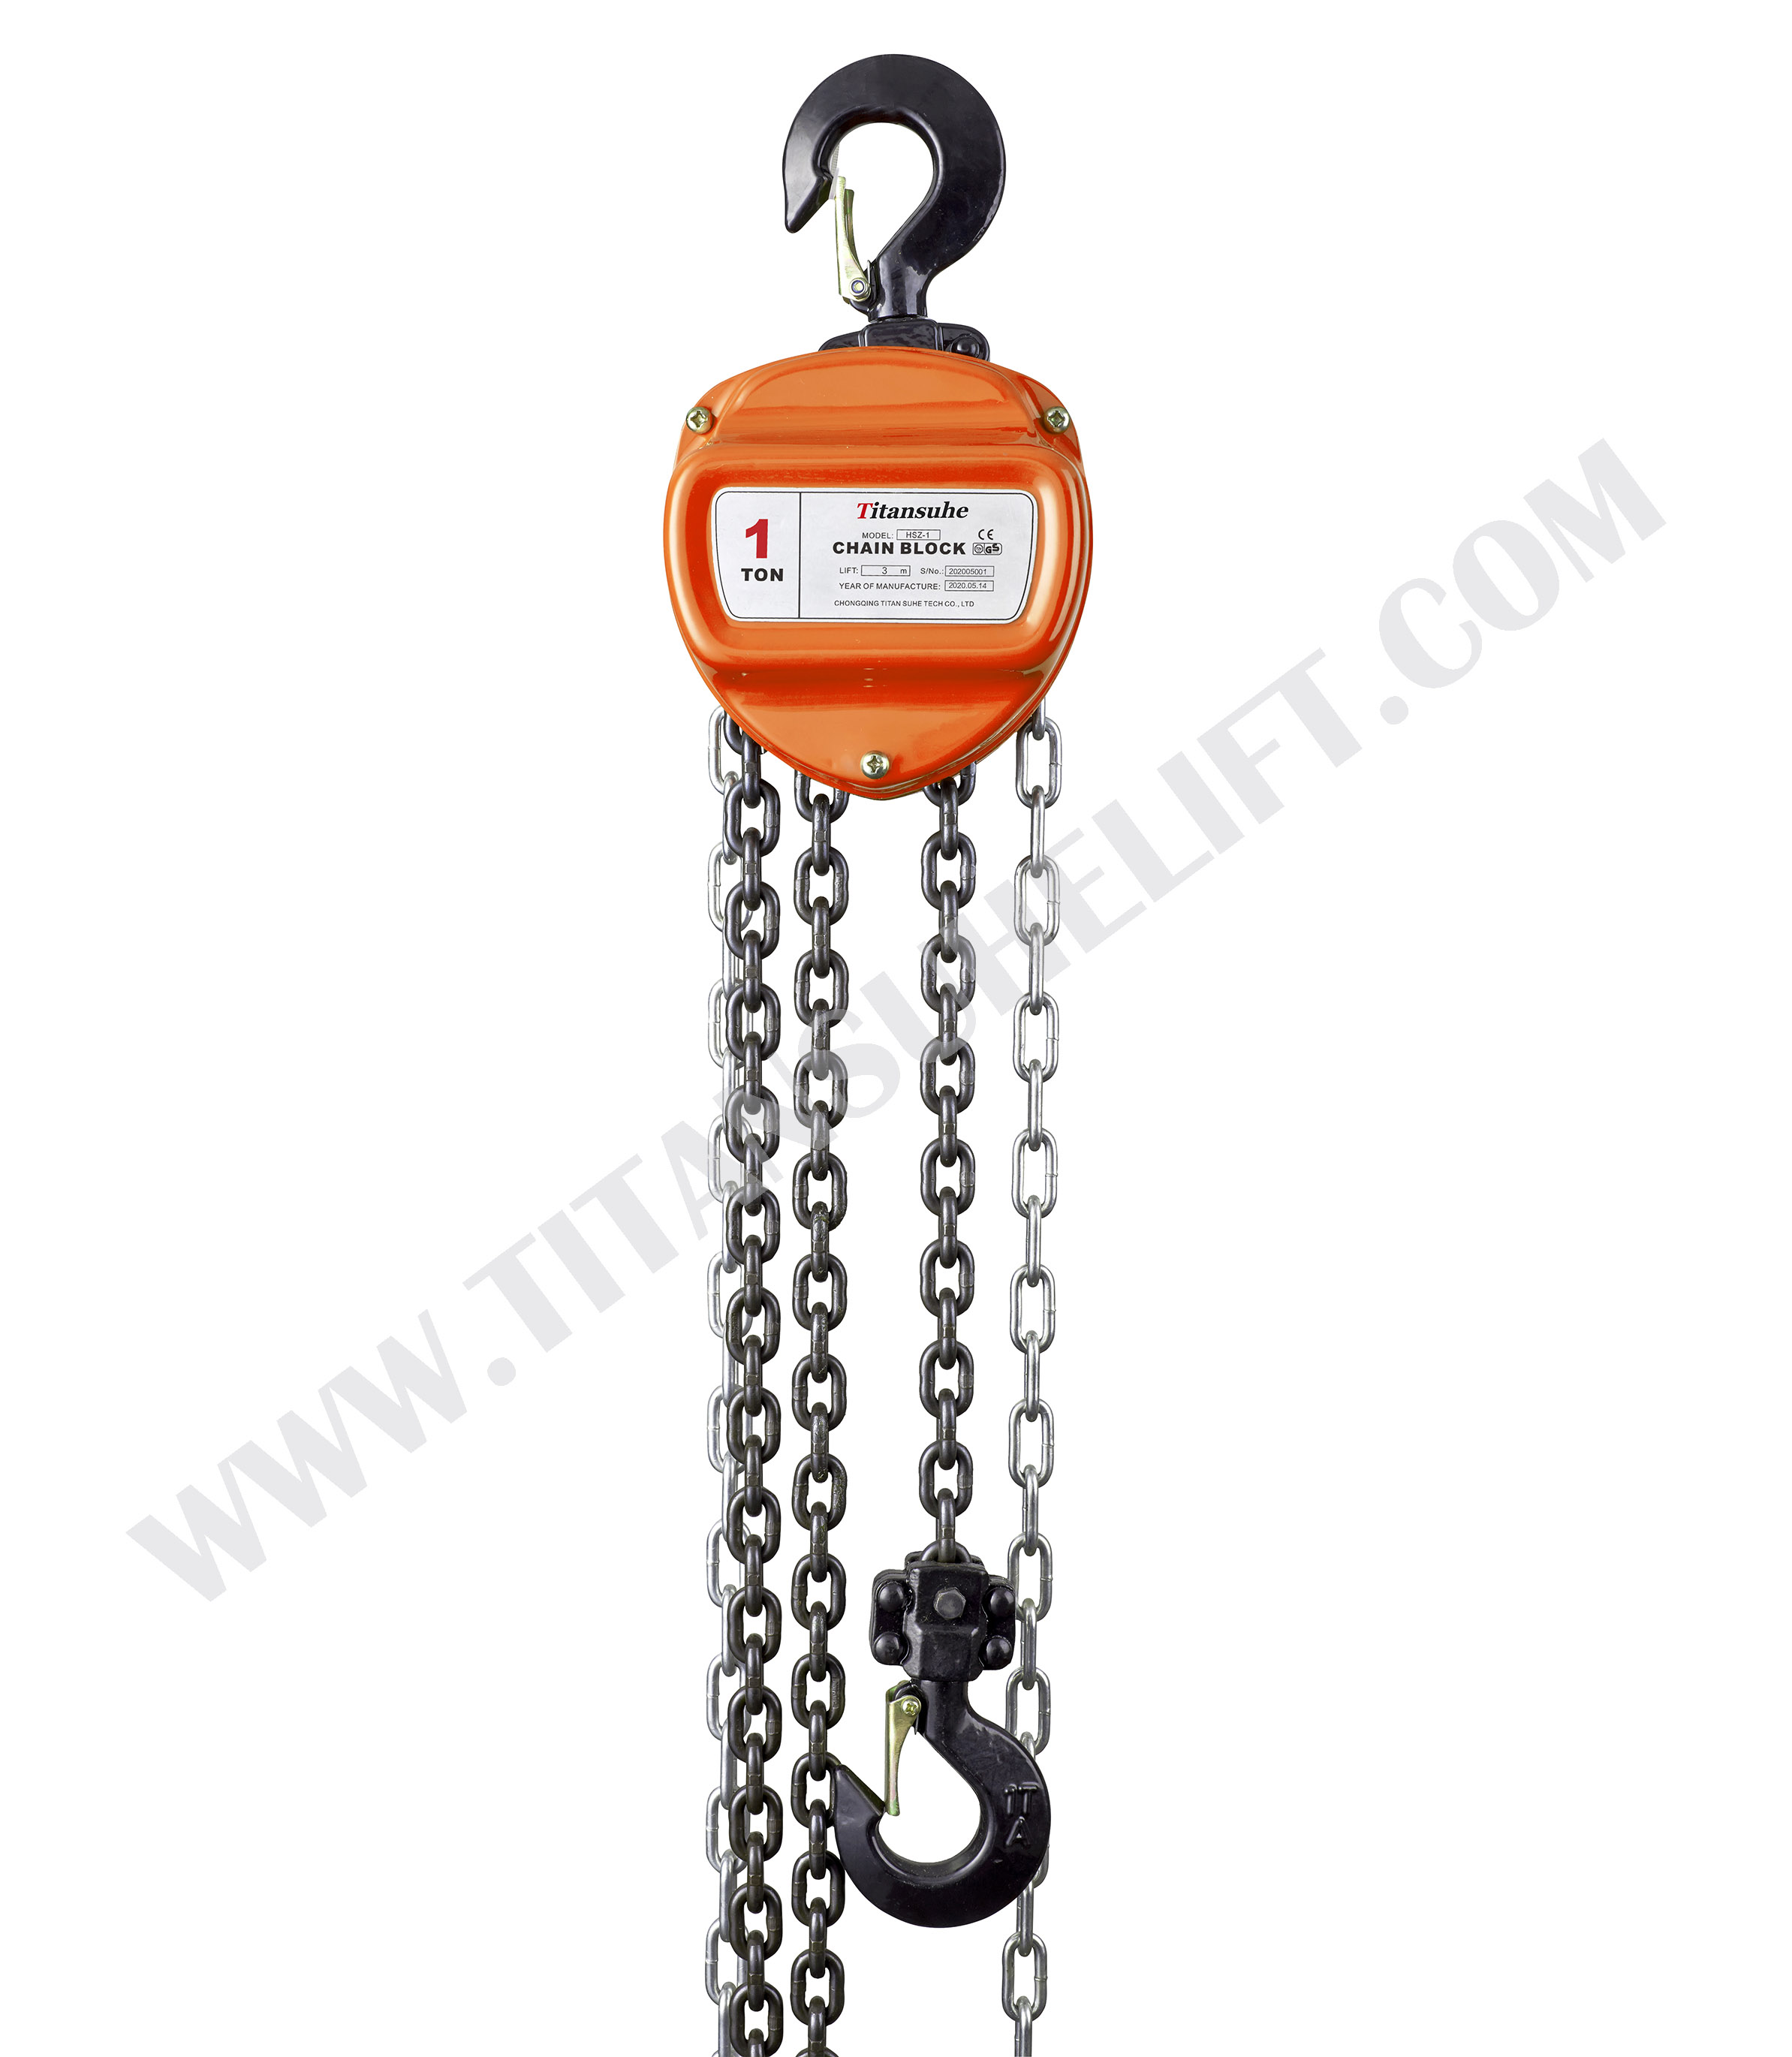 HSZ-A620 1.5 Ton Chain Hoist